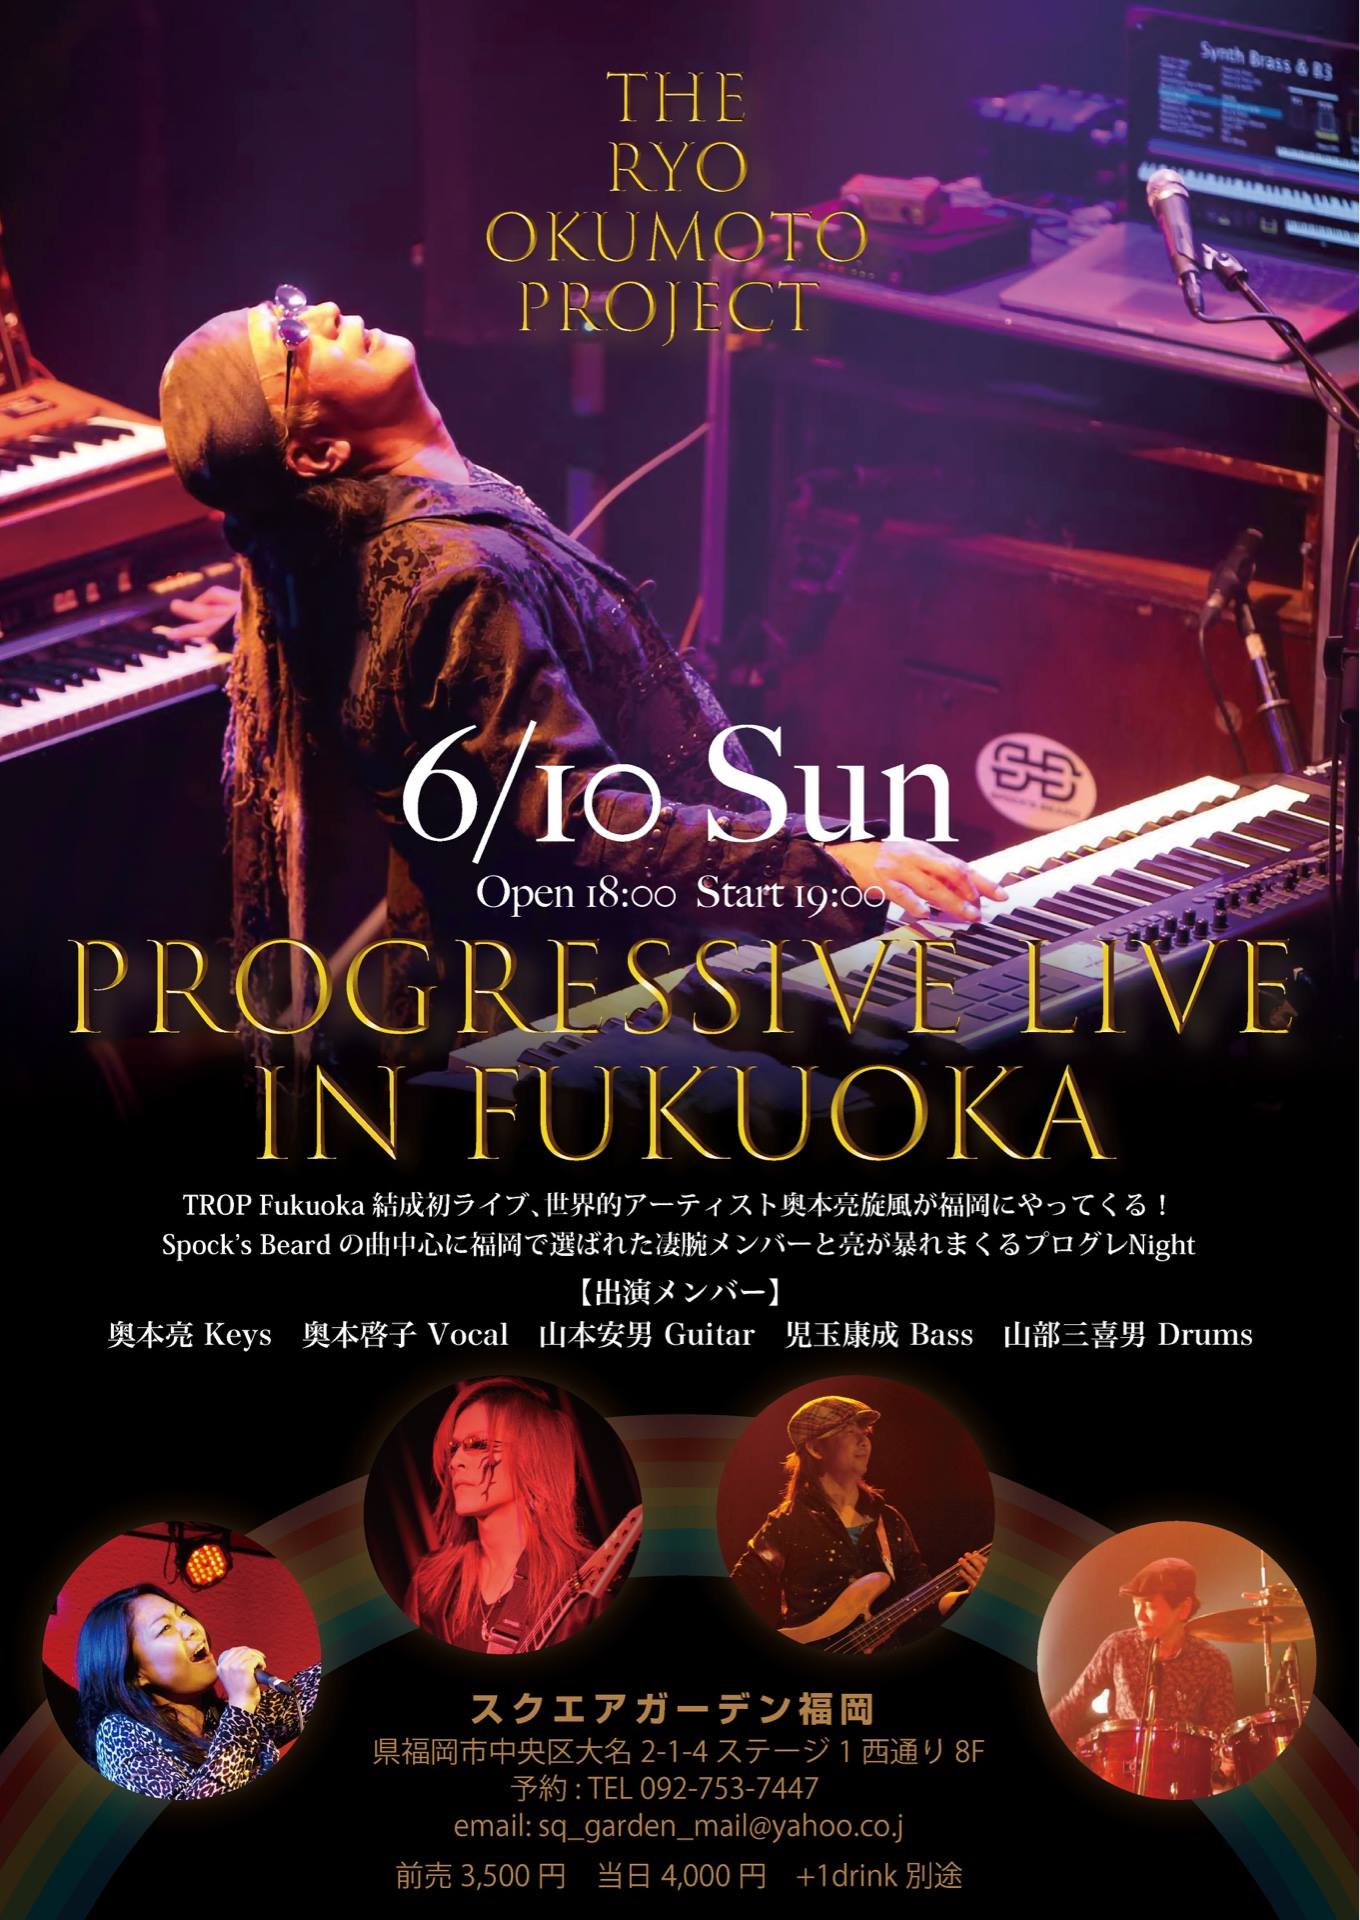 The Ryo Okumoto Project Live in Fukuoka